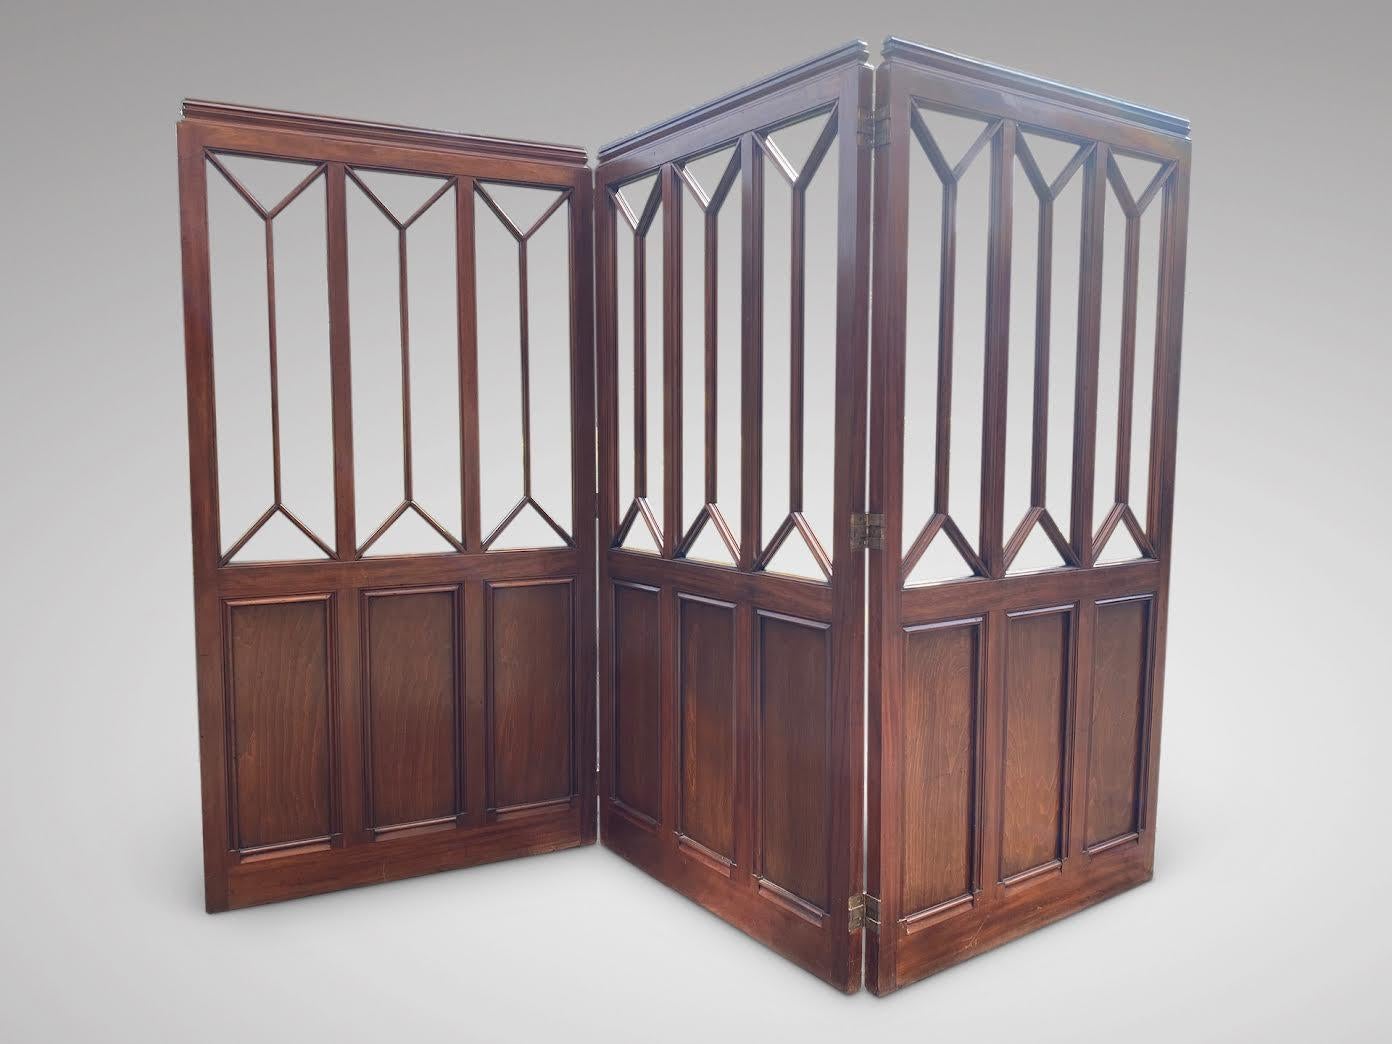 Eine atemberaubende Qualität 19. Jahrhundert Mahagoni klappbar drei Panel Dressing Bildschirm oder Raumteiler, mit schönen Mahagoni-Panels unten und astragal Öffnungen zum oberen Teil. Drei Holzpaneele aus Mahagoni an dreifachen Scharnieren. Die